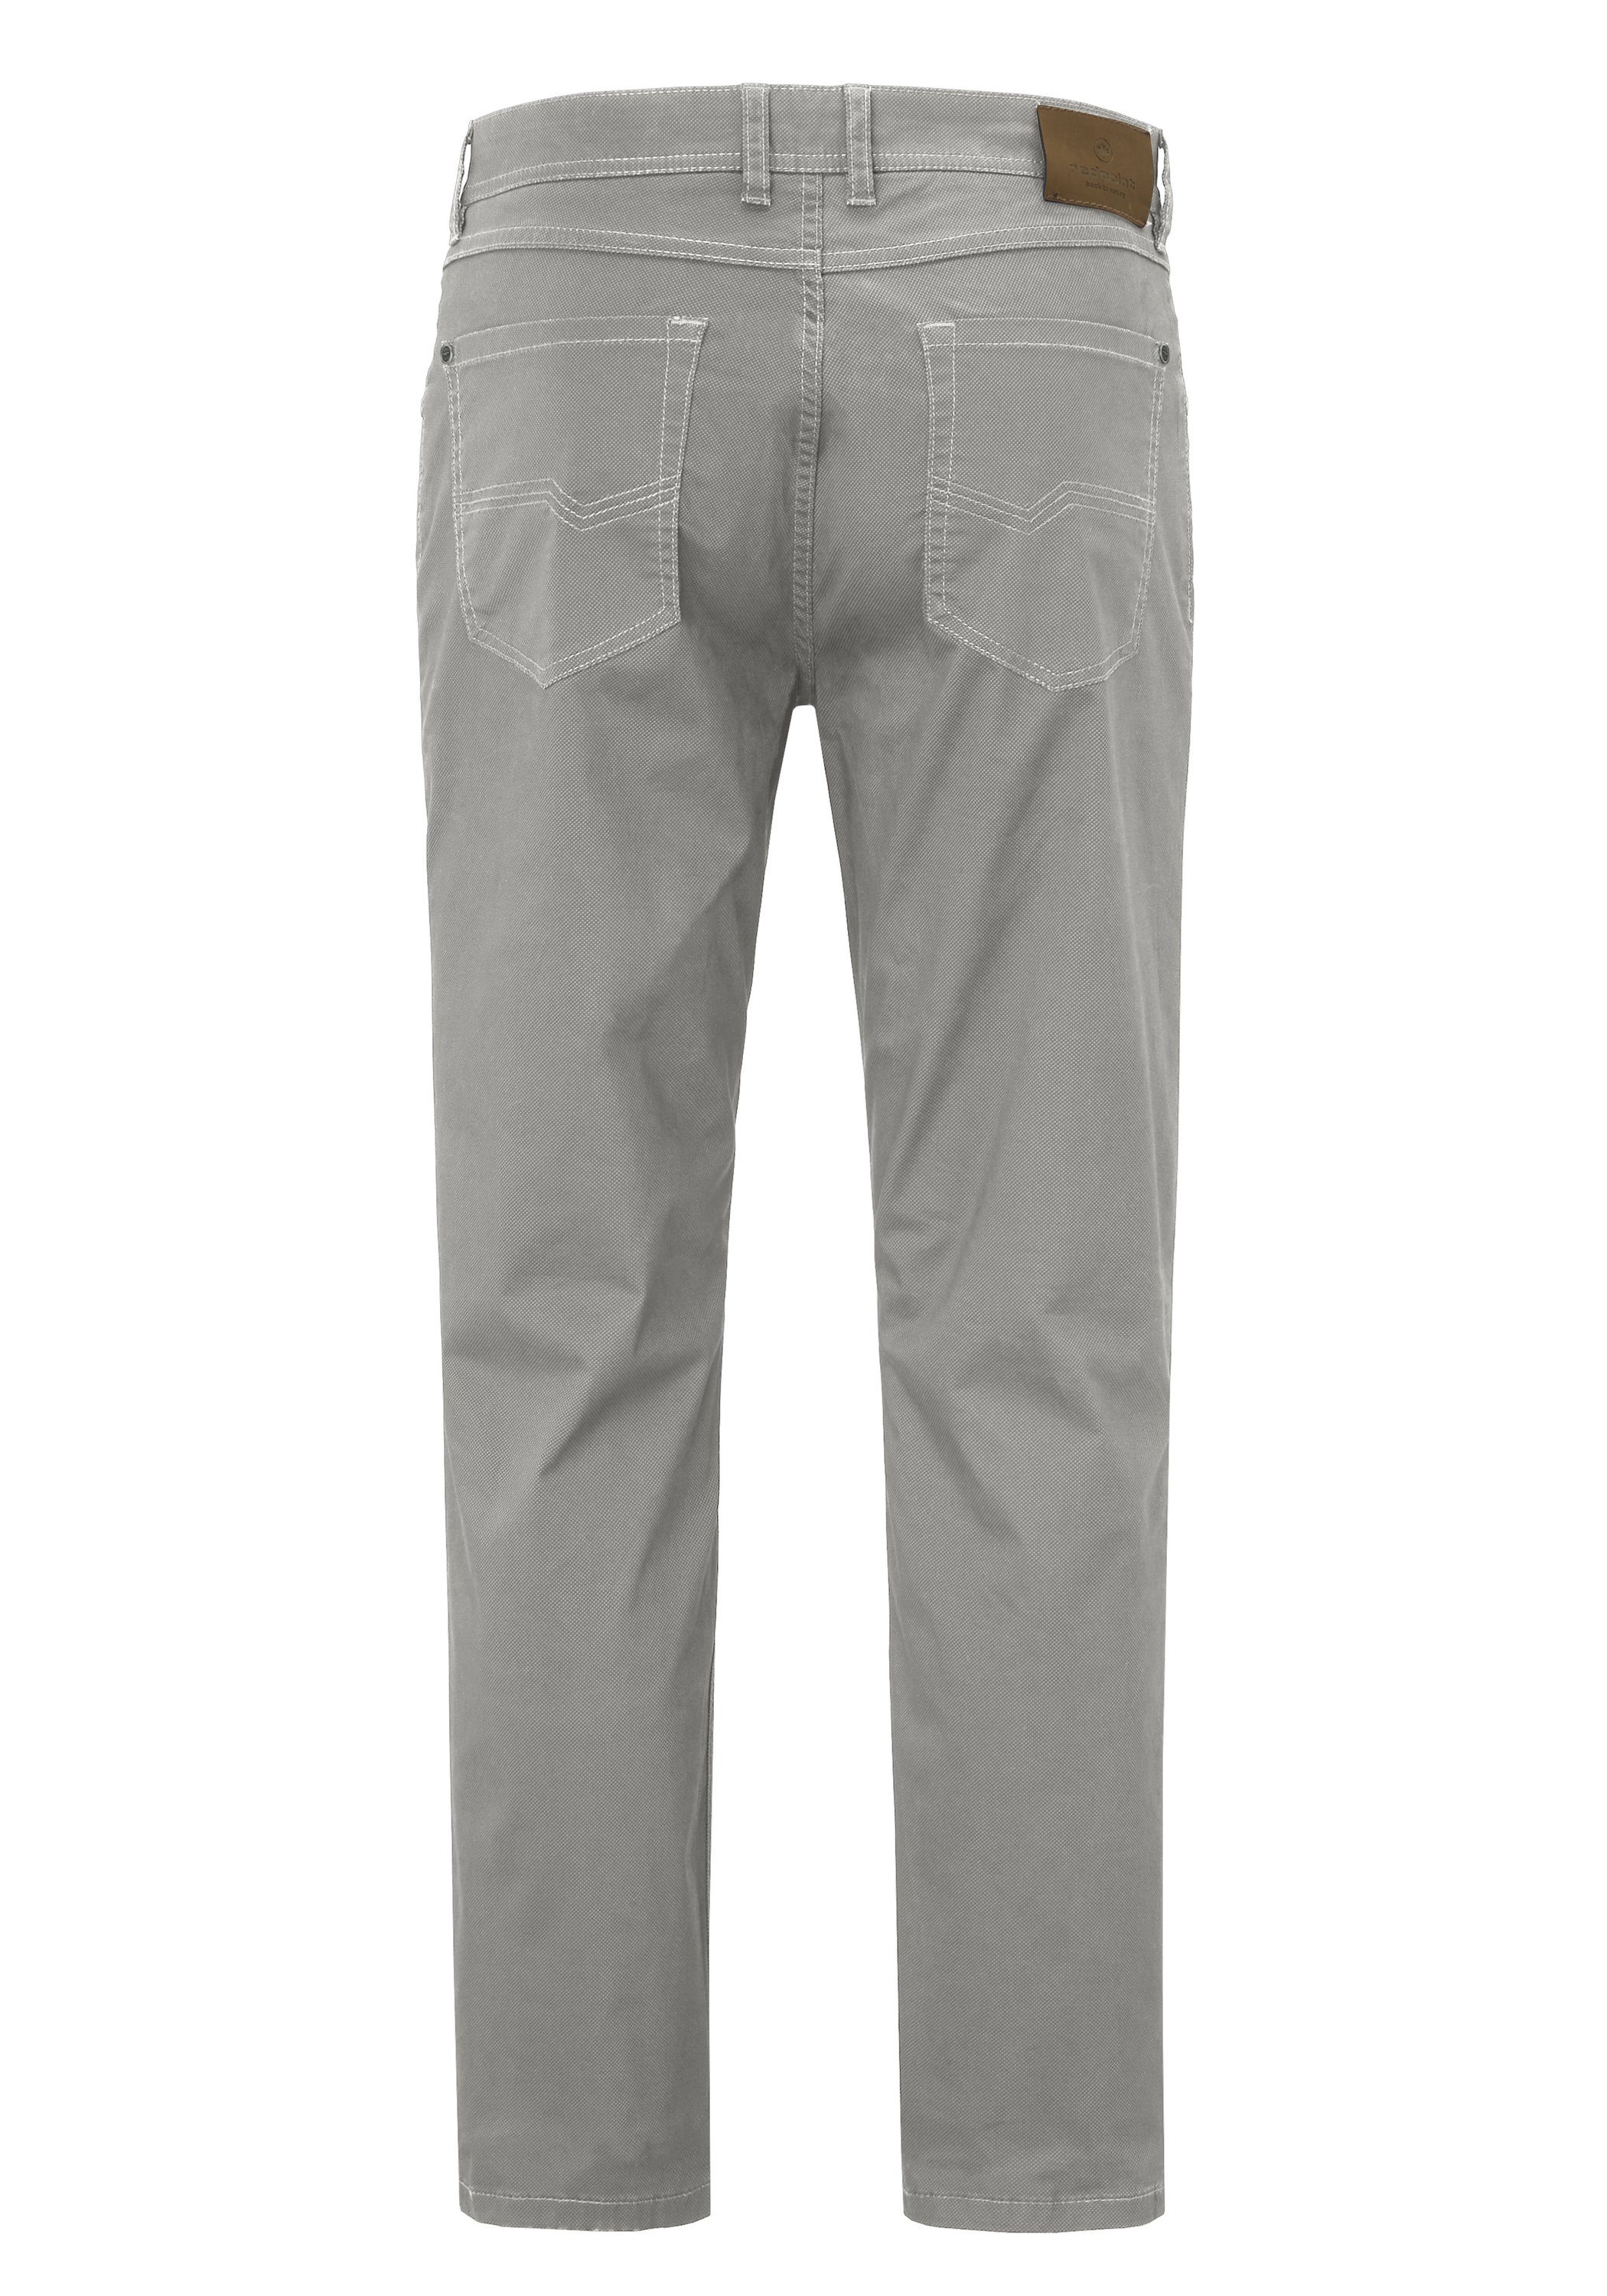 grey Hose Redpoint MILTON super stretch Pocket Stoffhose 5